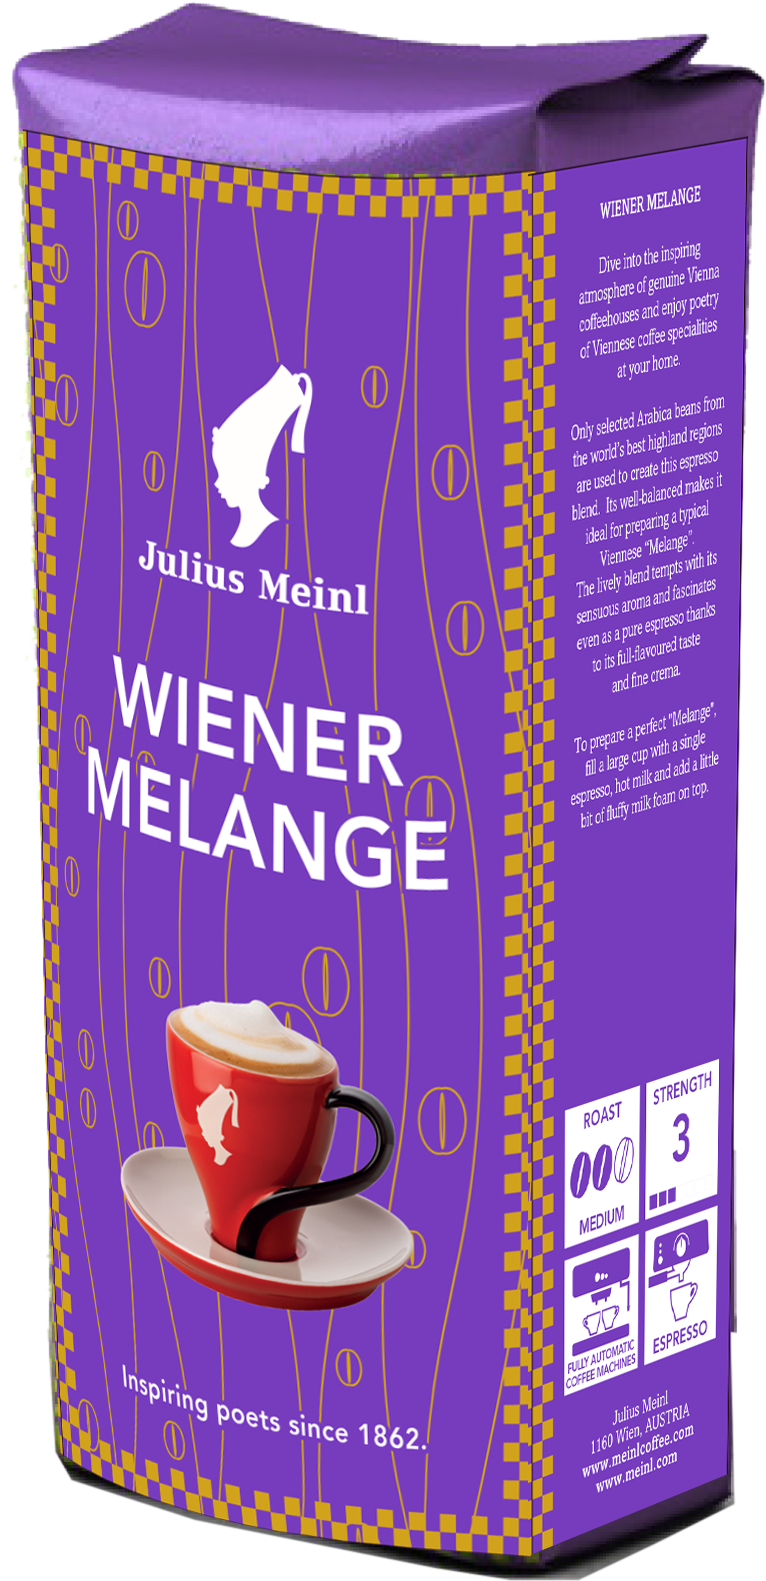 Viennese Melange Julius Meinl. Джулиус Майнл кофе в зернах. Julius Meinl растворимый кофе. Кофе Julius Meinl Espresso. Купить кофе юлиус